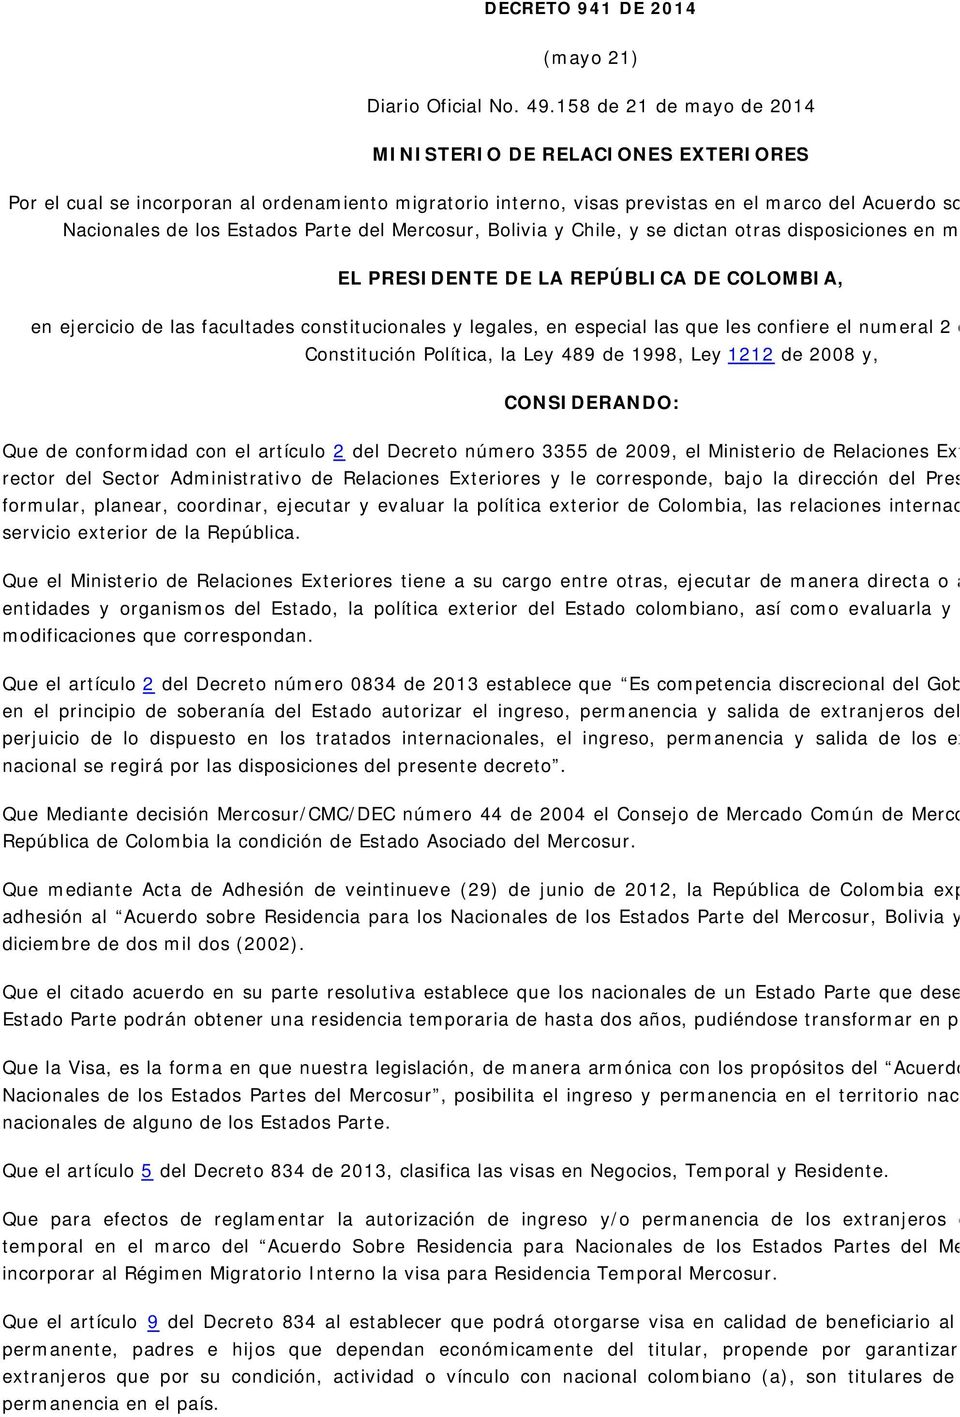 Estados Parte del Mercosur, Bolivia y Chile, y se dictan otras disposiciones en materia migrat EL PRESIDENTE DE LA REPÚBLICA DE COLOMBIA, en ejercicio de las facultades constitucionales y legales, en